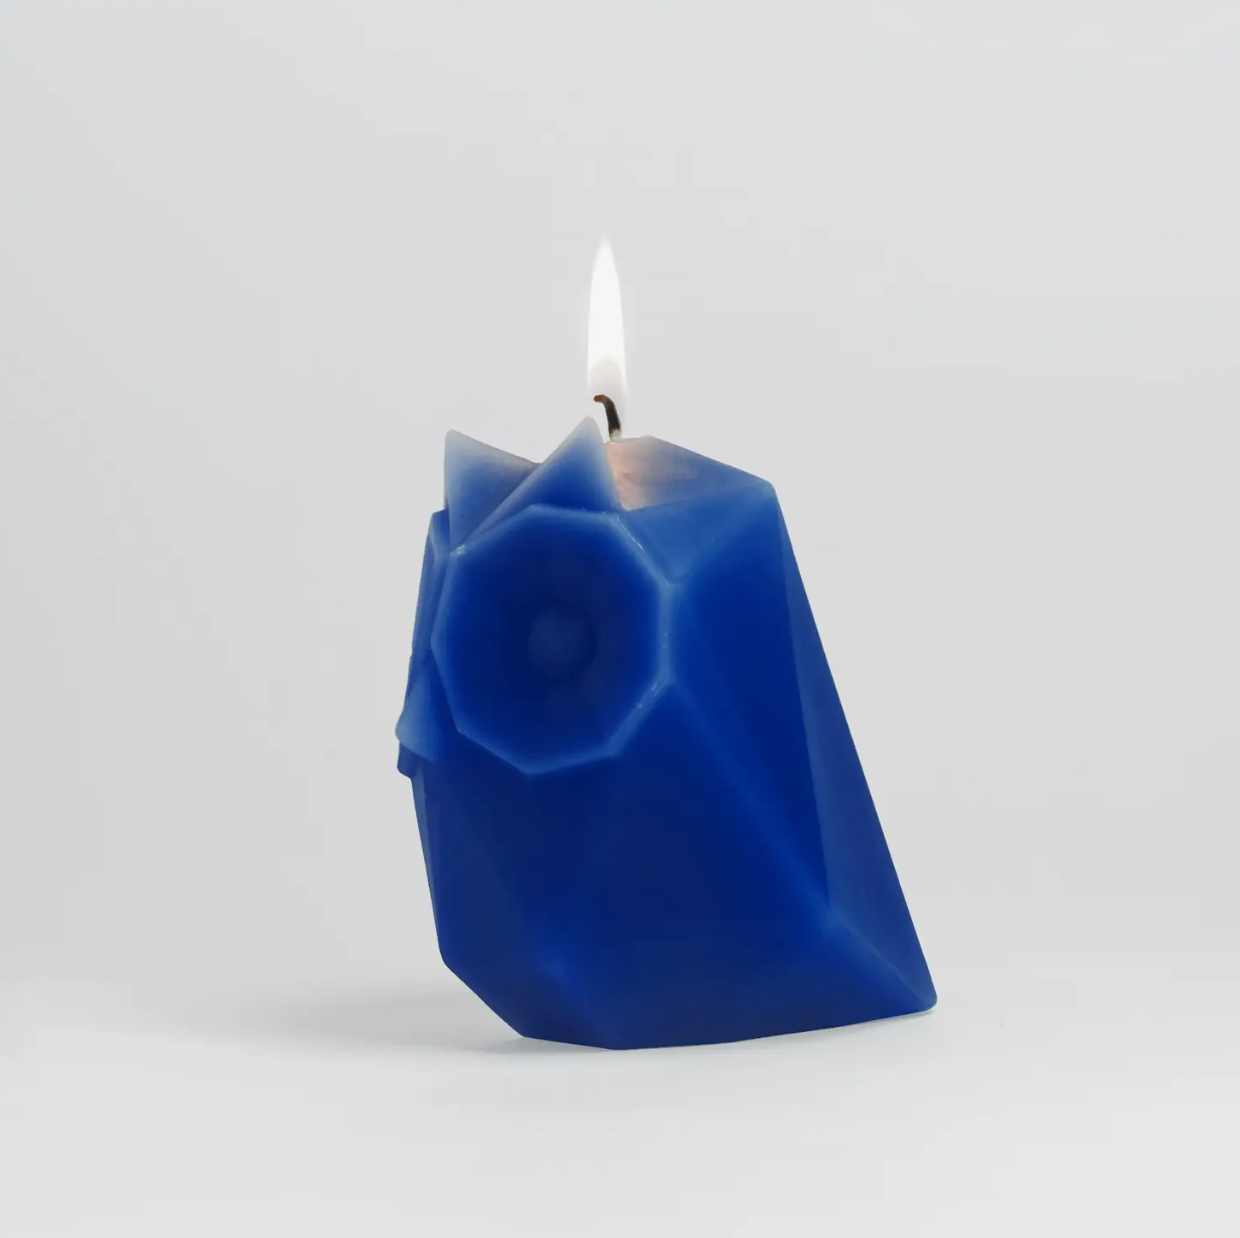 Pyropet Ugla Owl Candle - Electric Blue